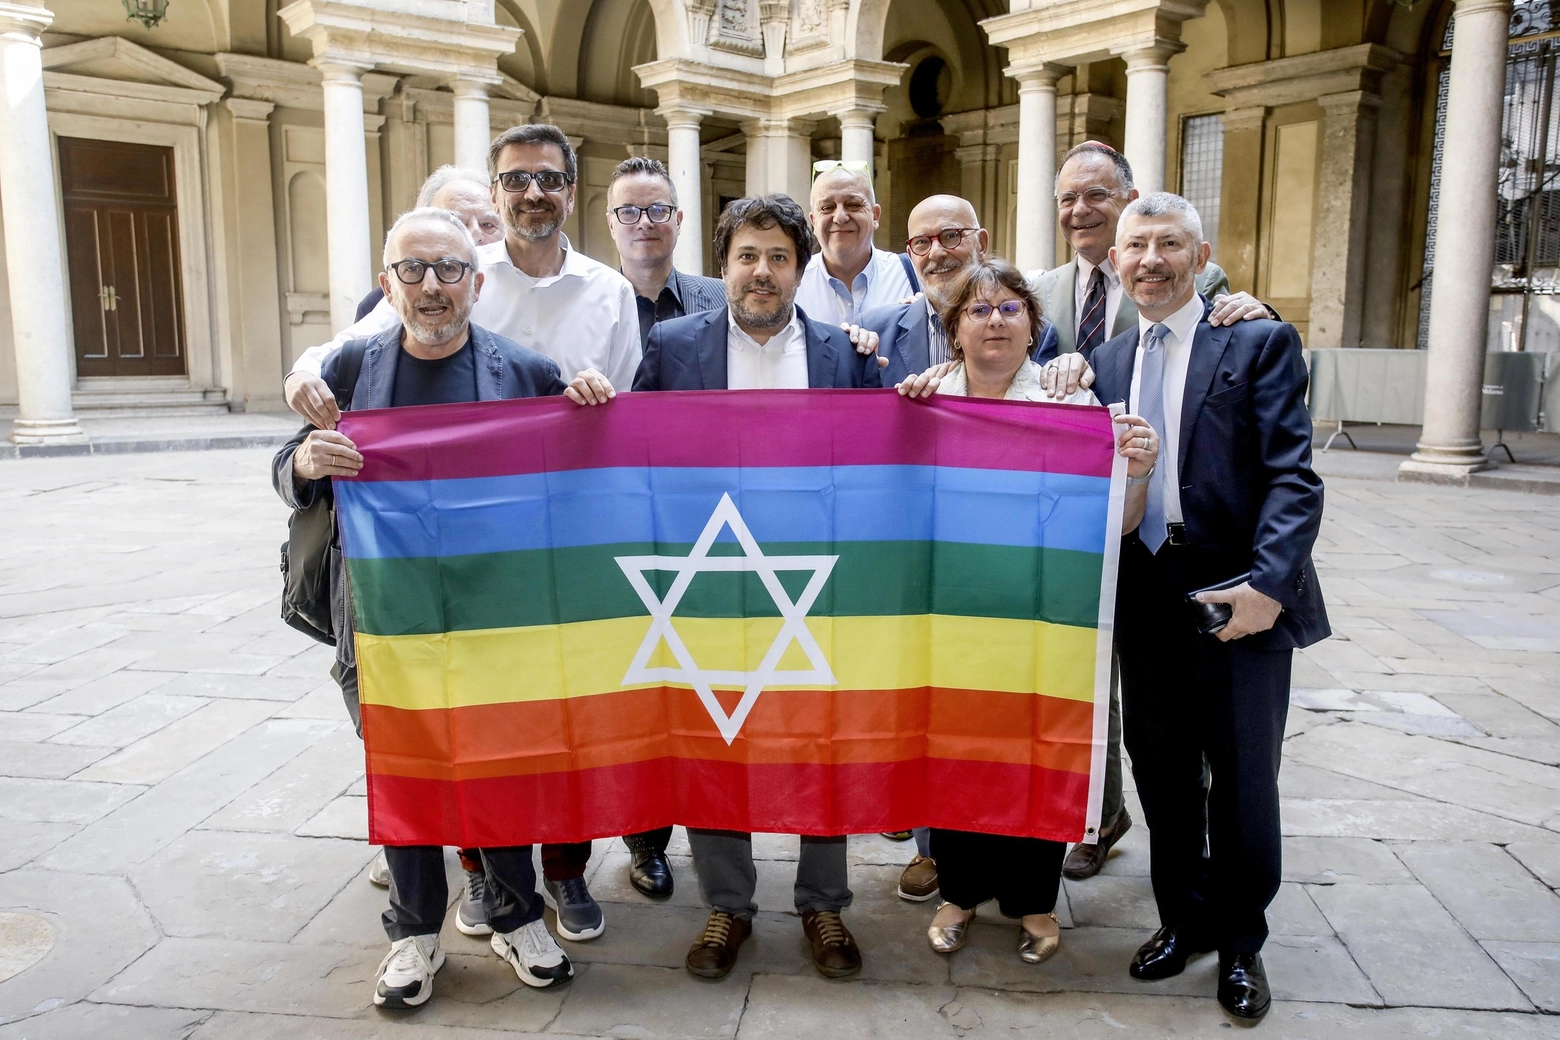 Keshet Italia, usare parola genocidio al Pride è fuori luogo